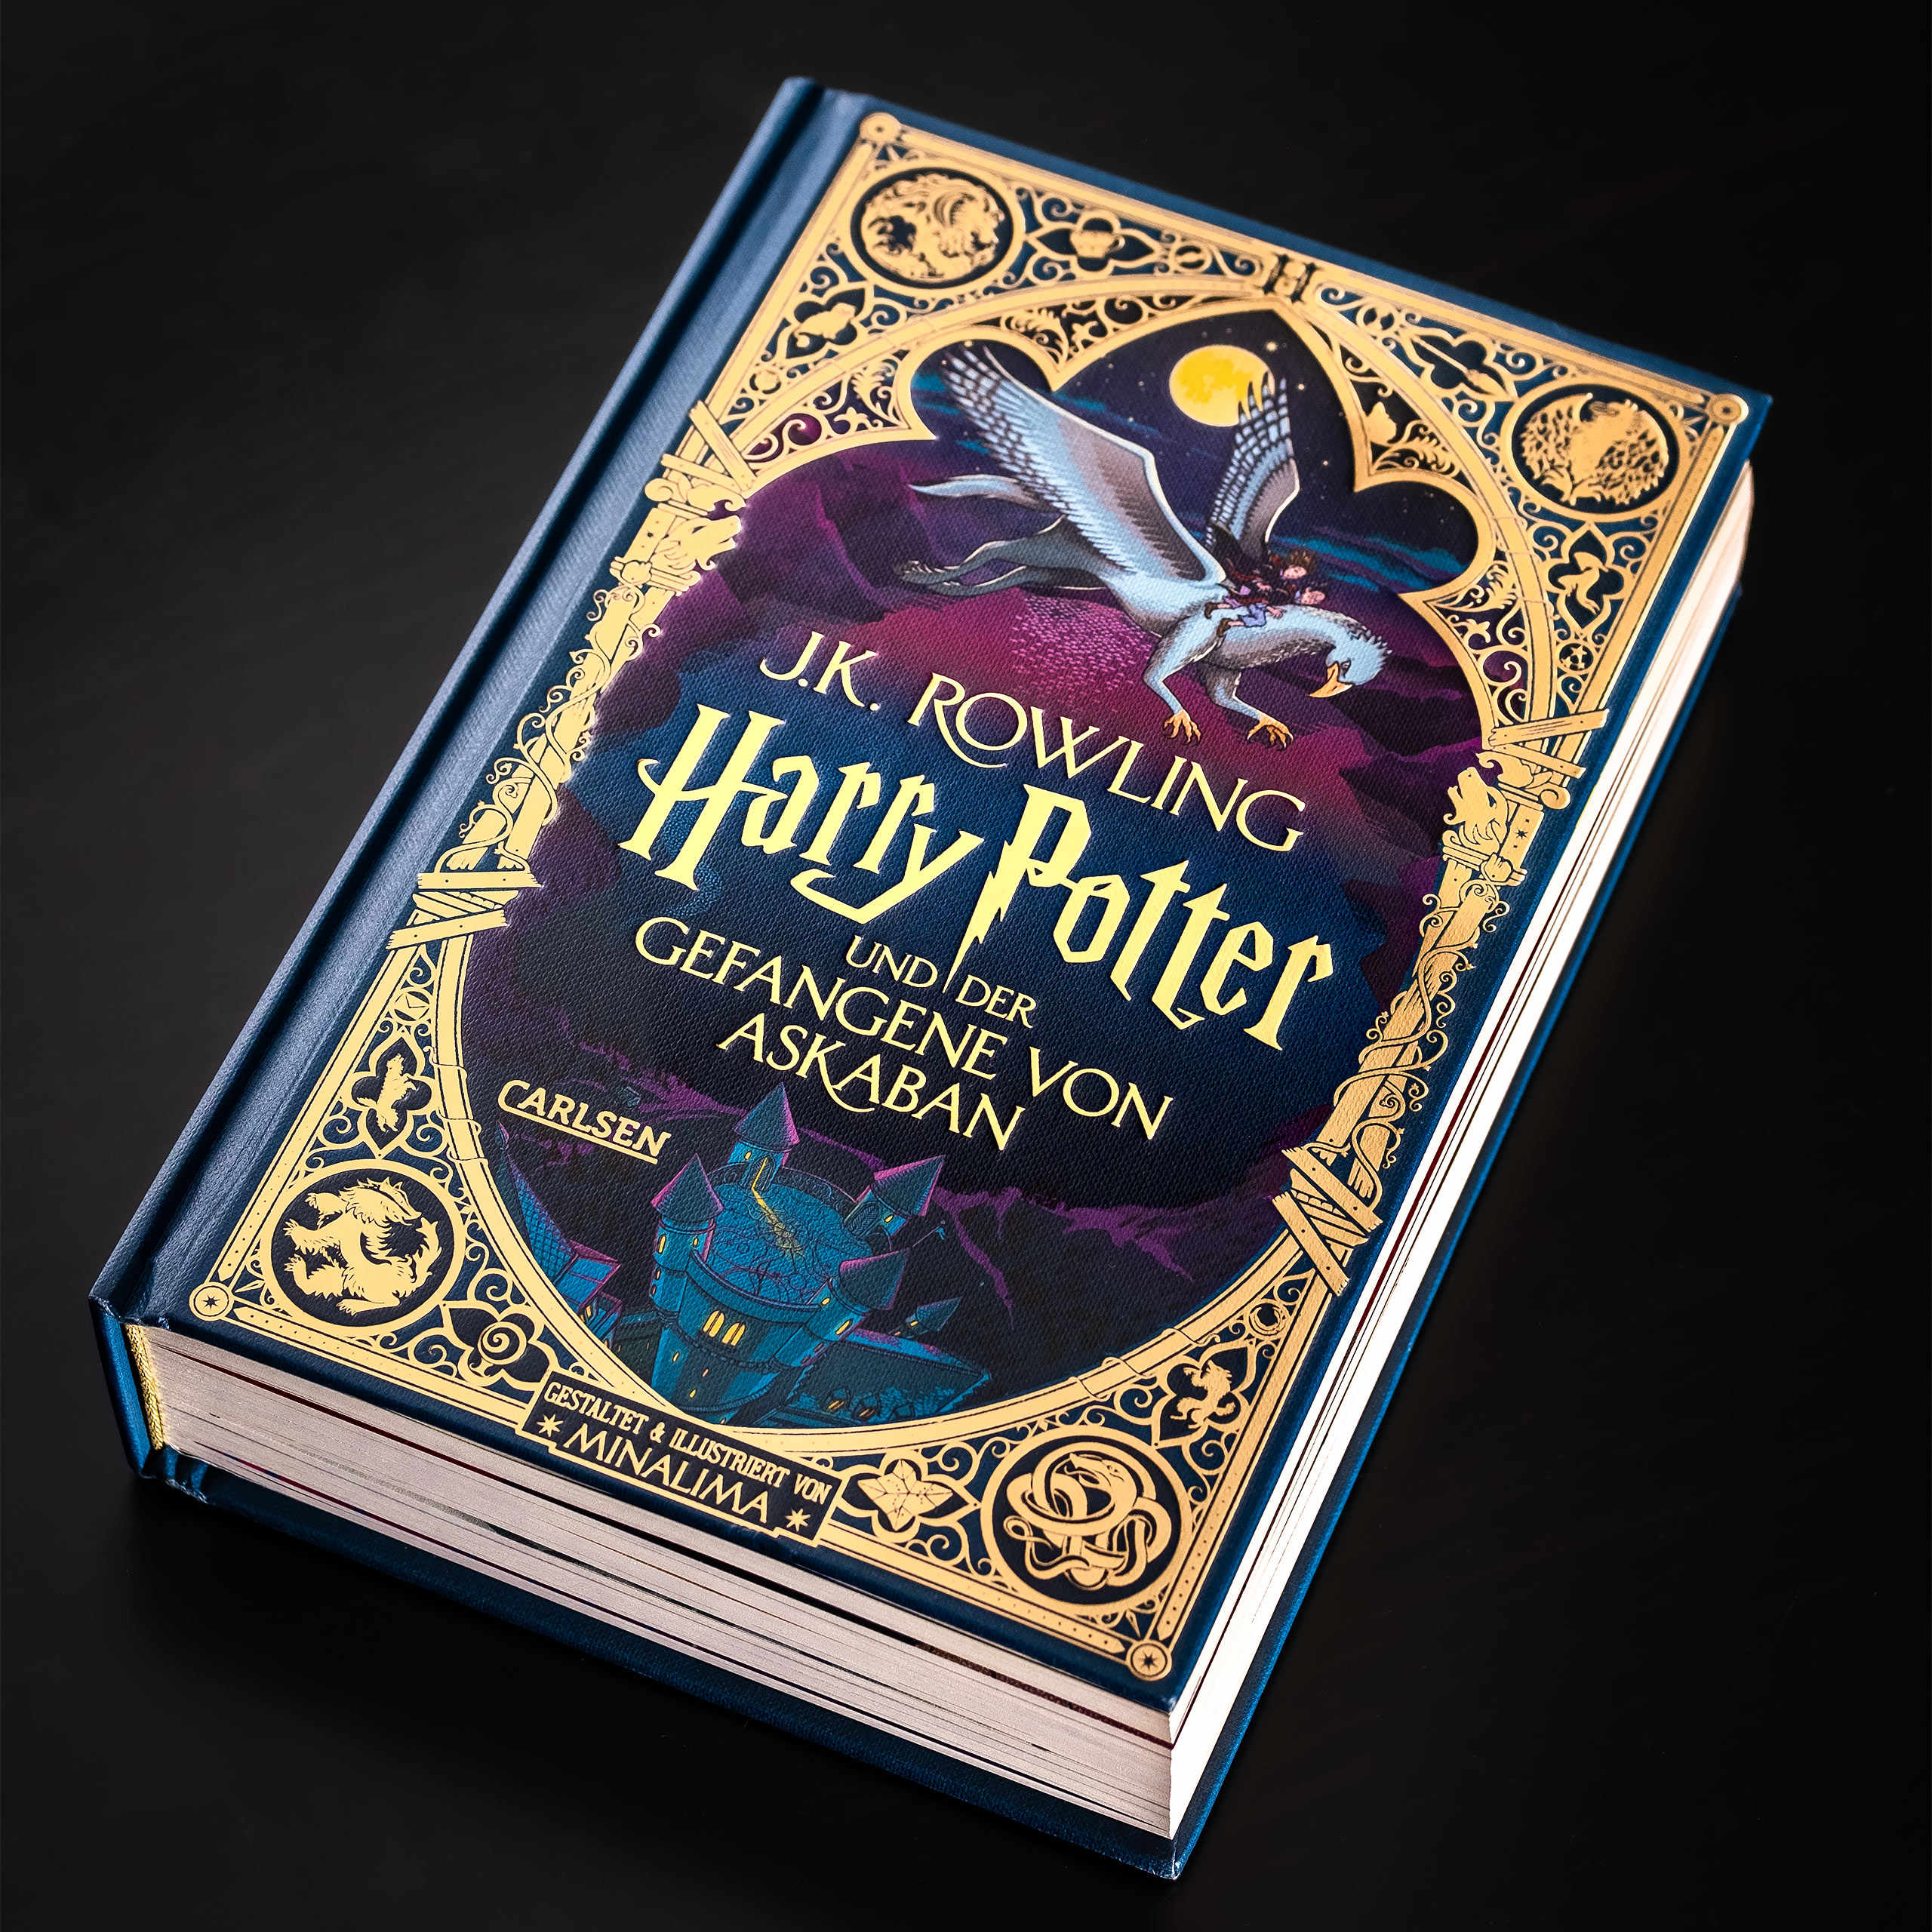 Harry Potter book et le prisonnier d'Azkaban illustrated by